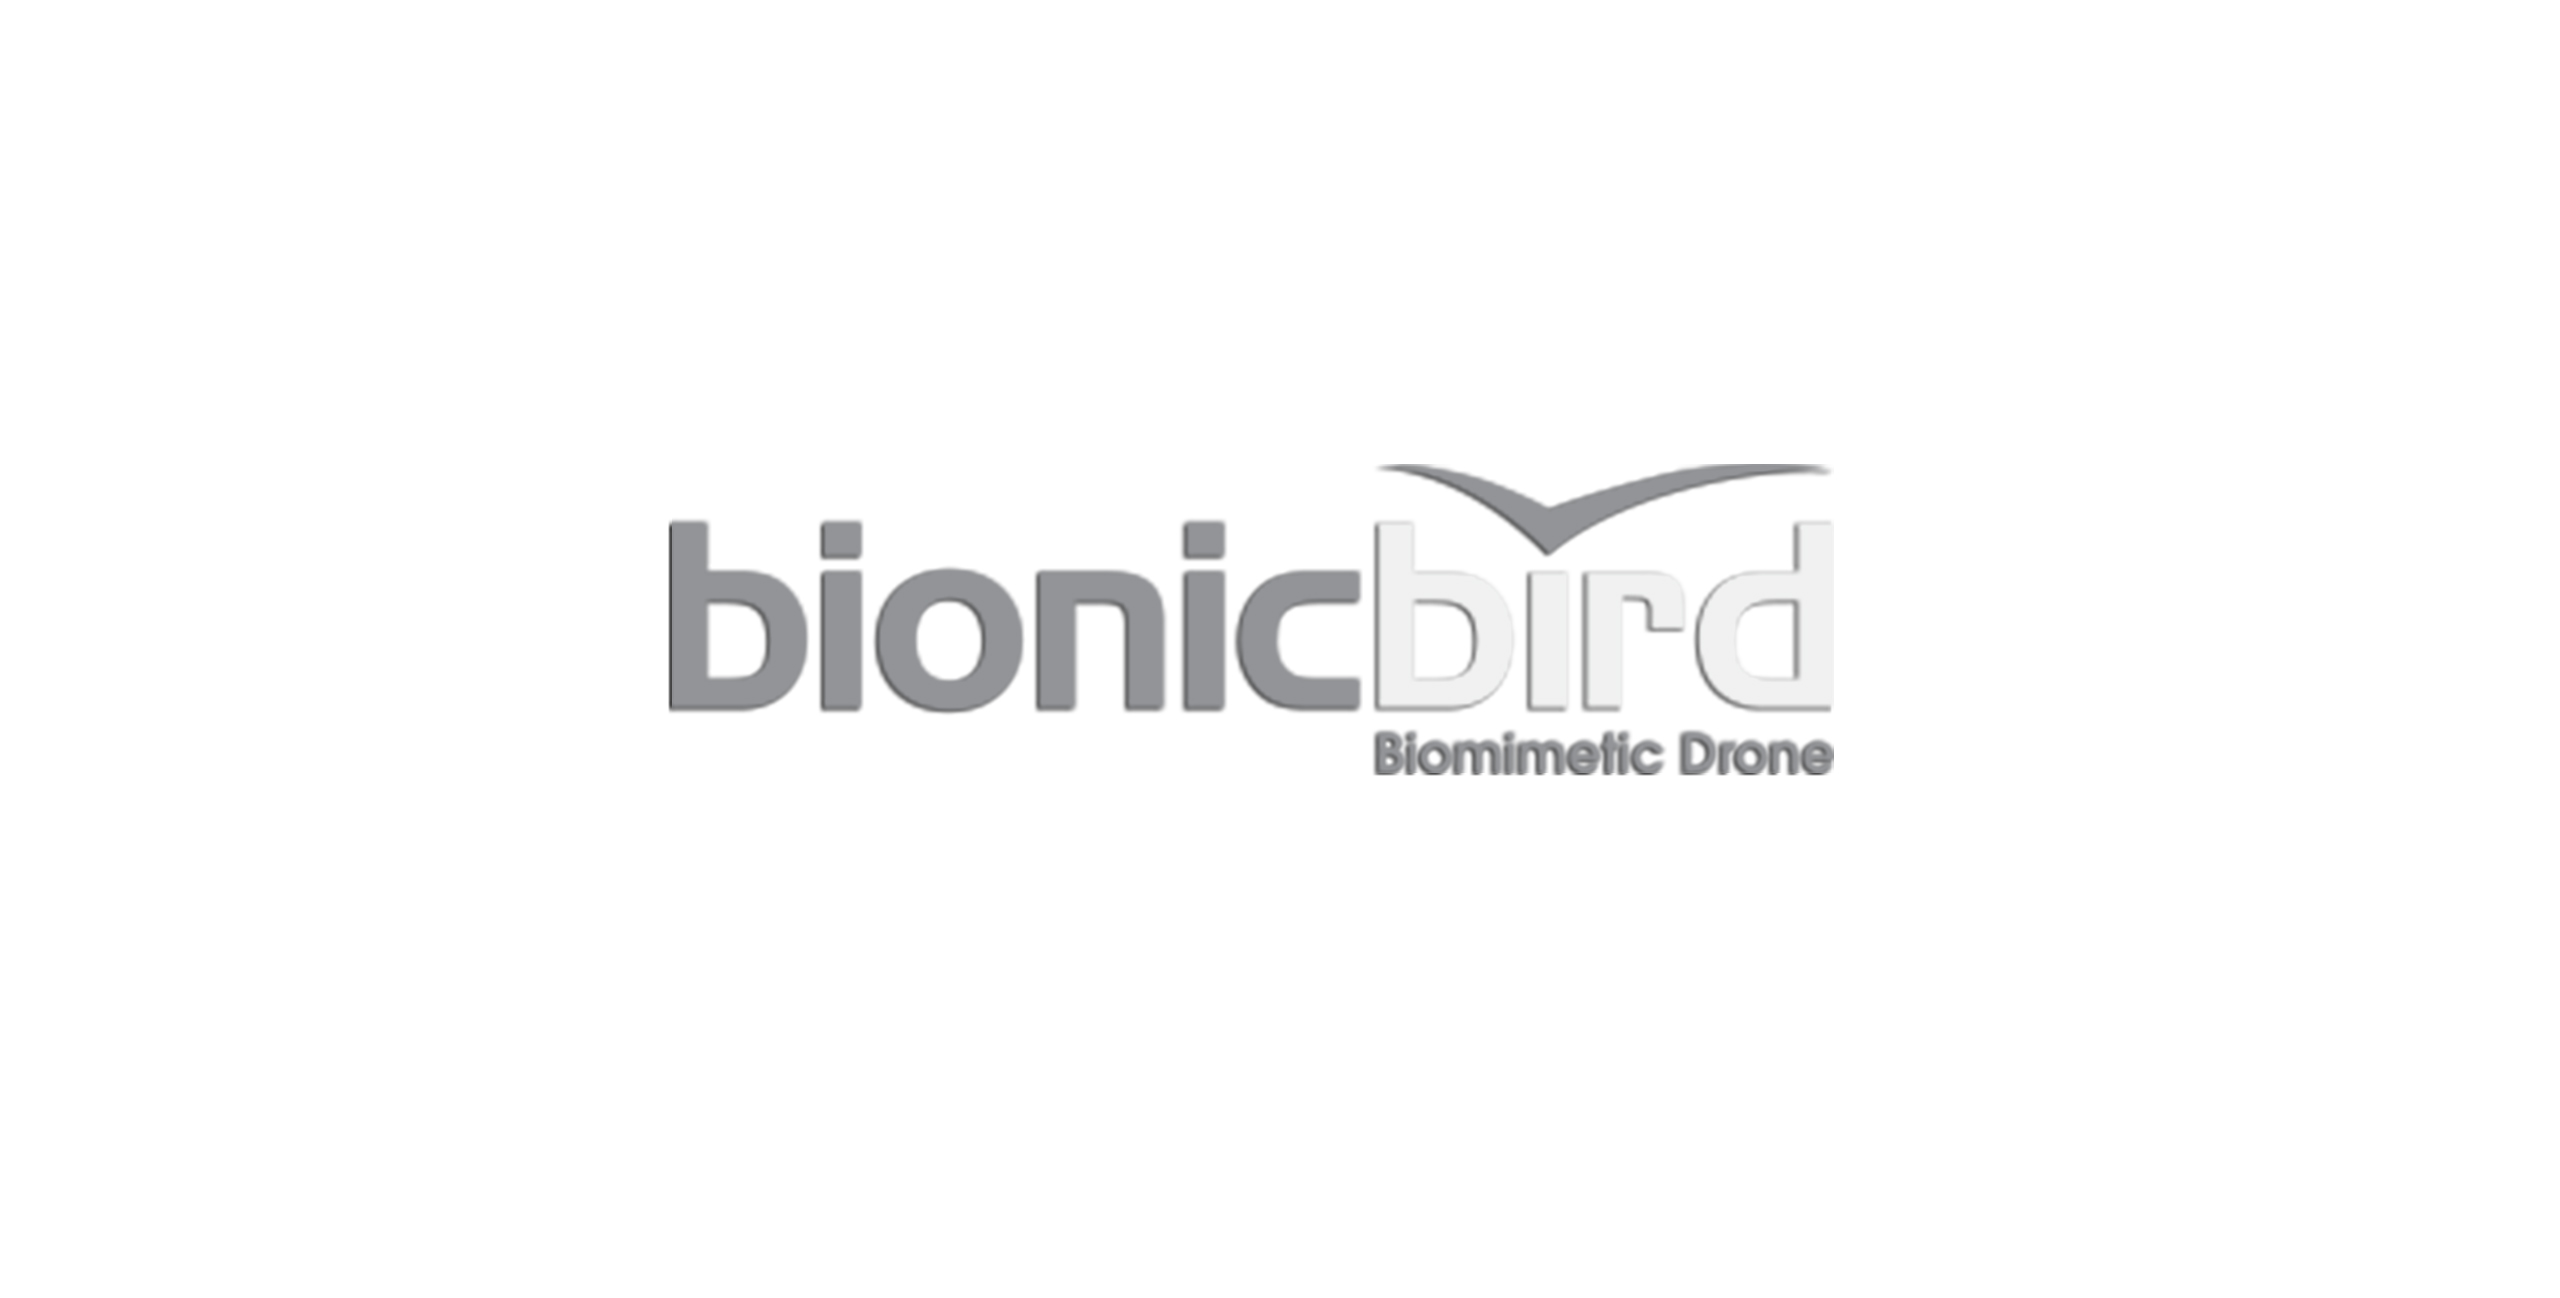 bionic bird